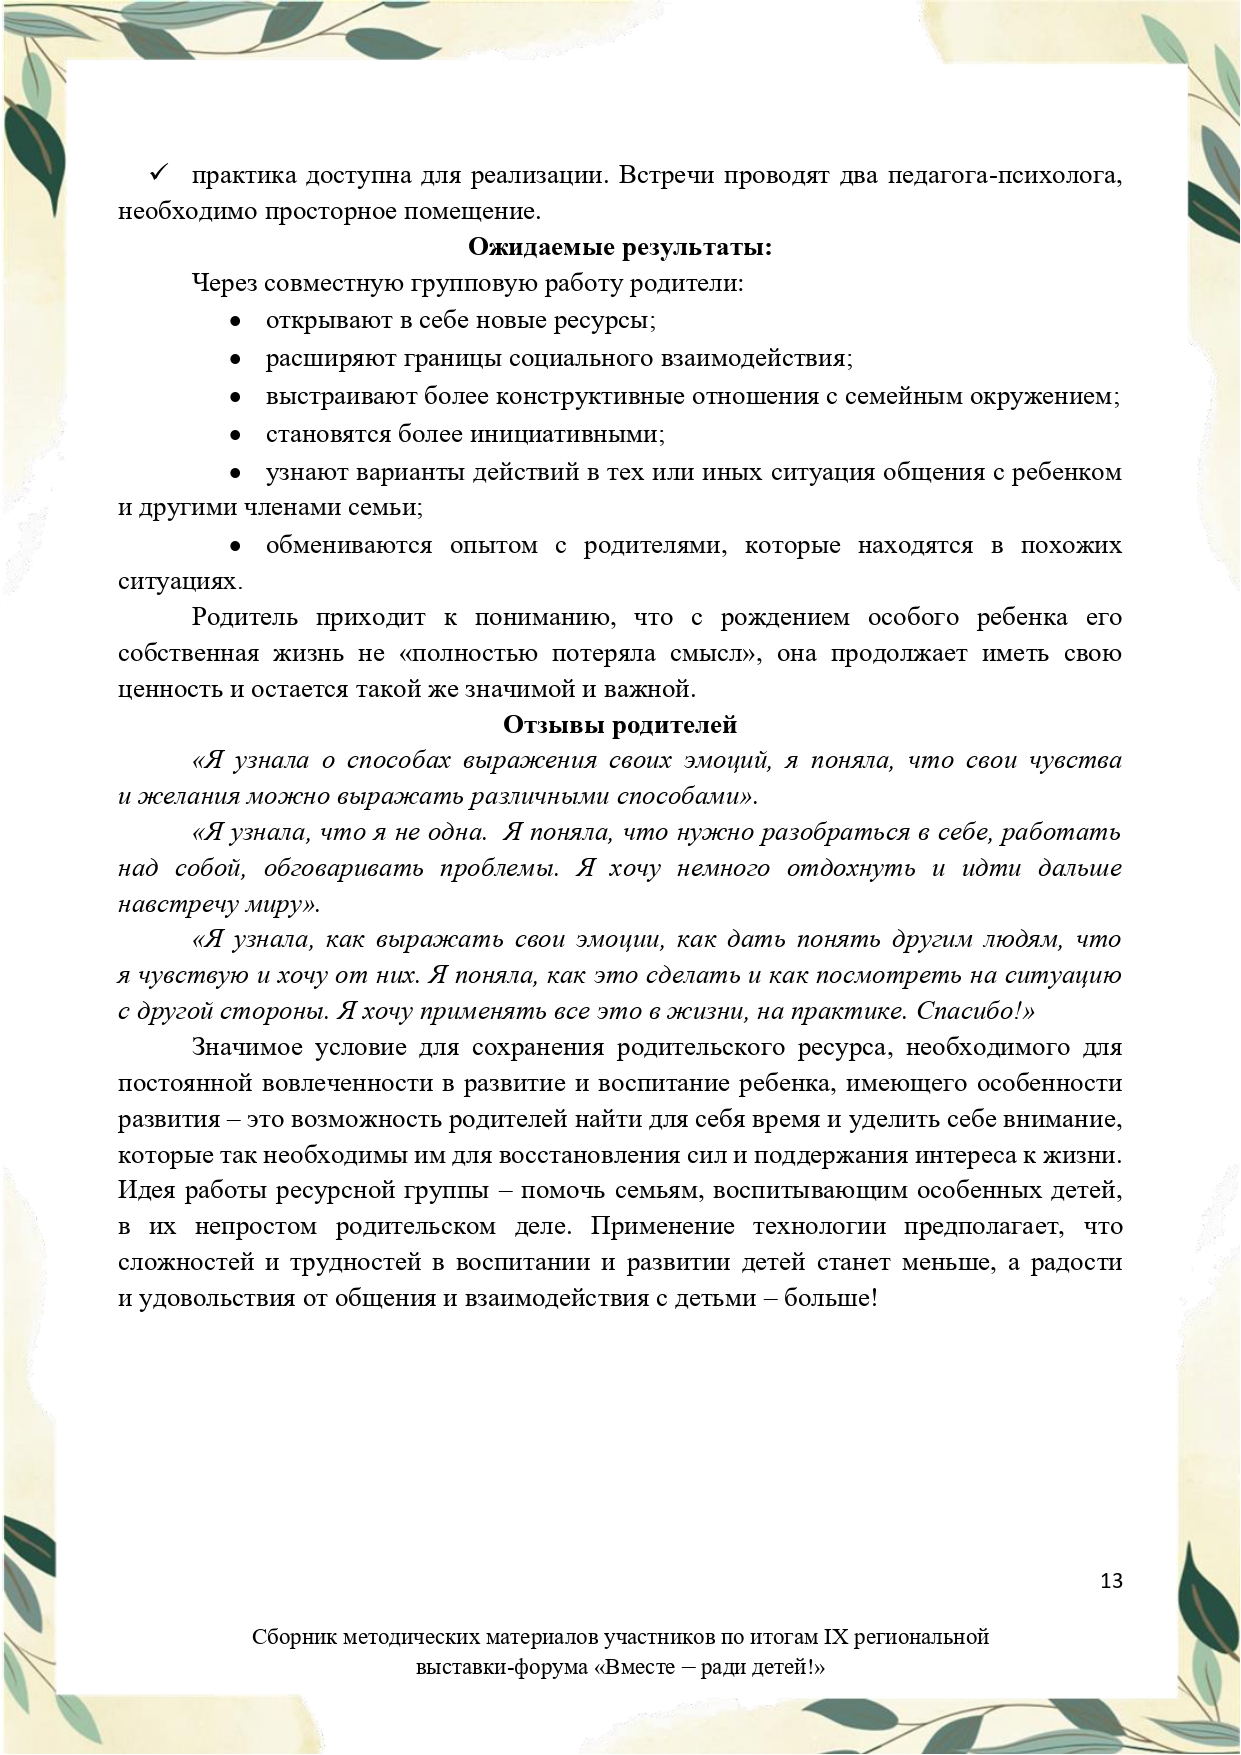 Sbornik_metodicheskikh_materialov_uchastnikov_IX_regionalnoy_vystavki-foruma_Vmeste__radi_detey_33__2023_page-0013